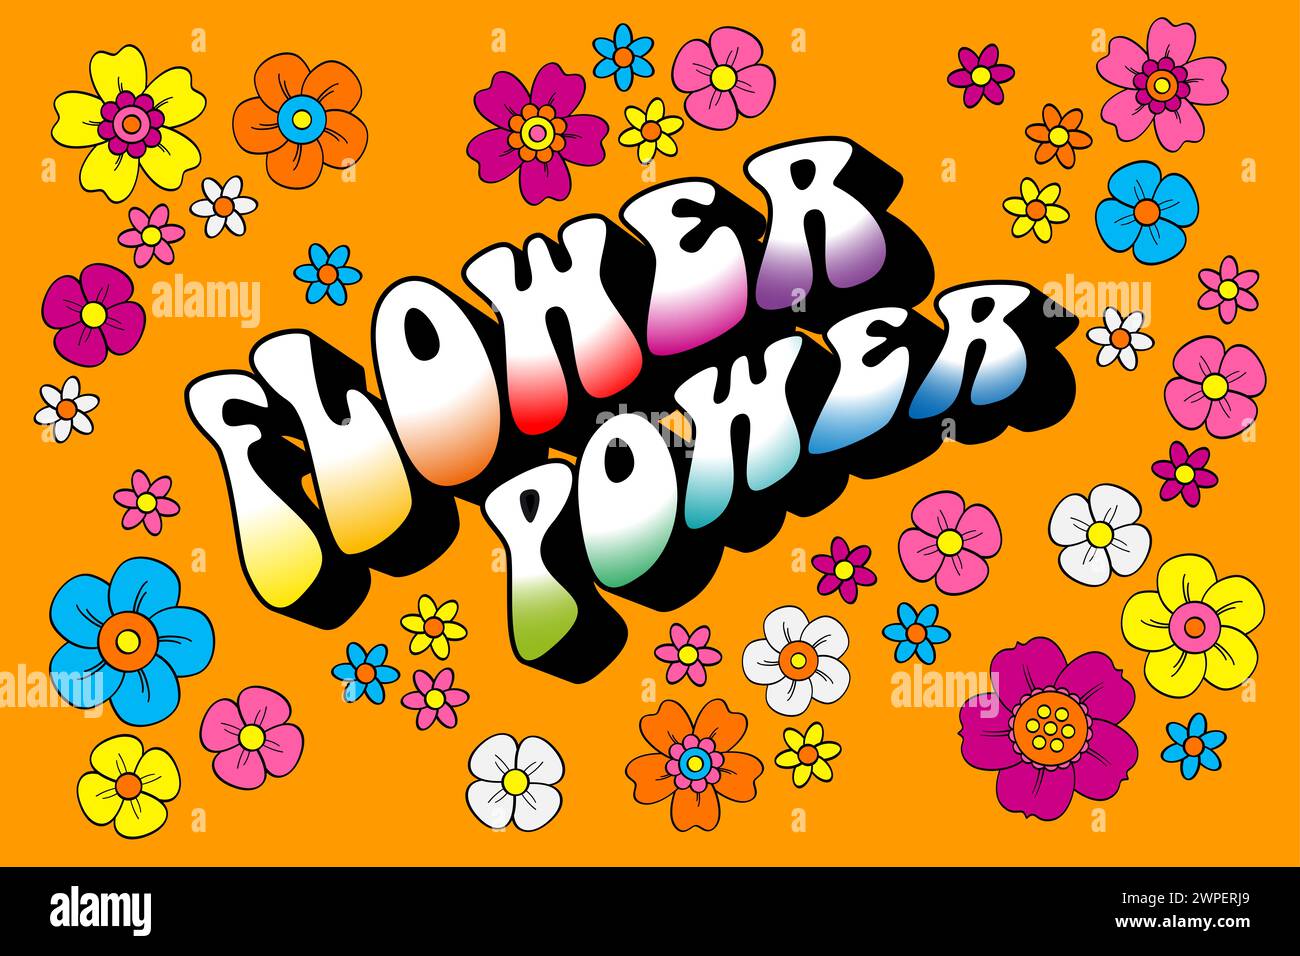 Flower Power-Schriftzug umgeben von zahlreichen farbenfrohen Hippie-Blumen auf orangefarbenem Hintergrund. Slogan und Symbol für passiven Widerstand und Gewaltlosigkeit. Stockfoto